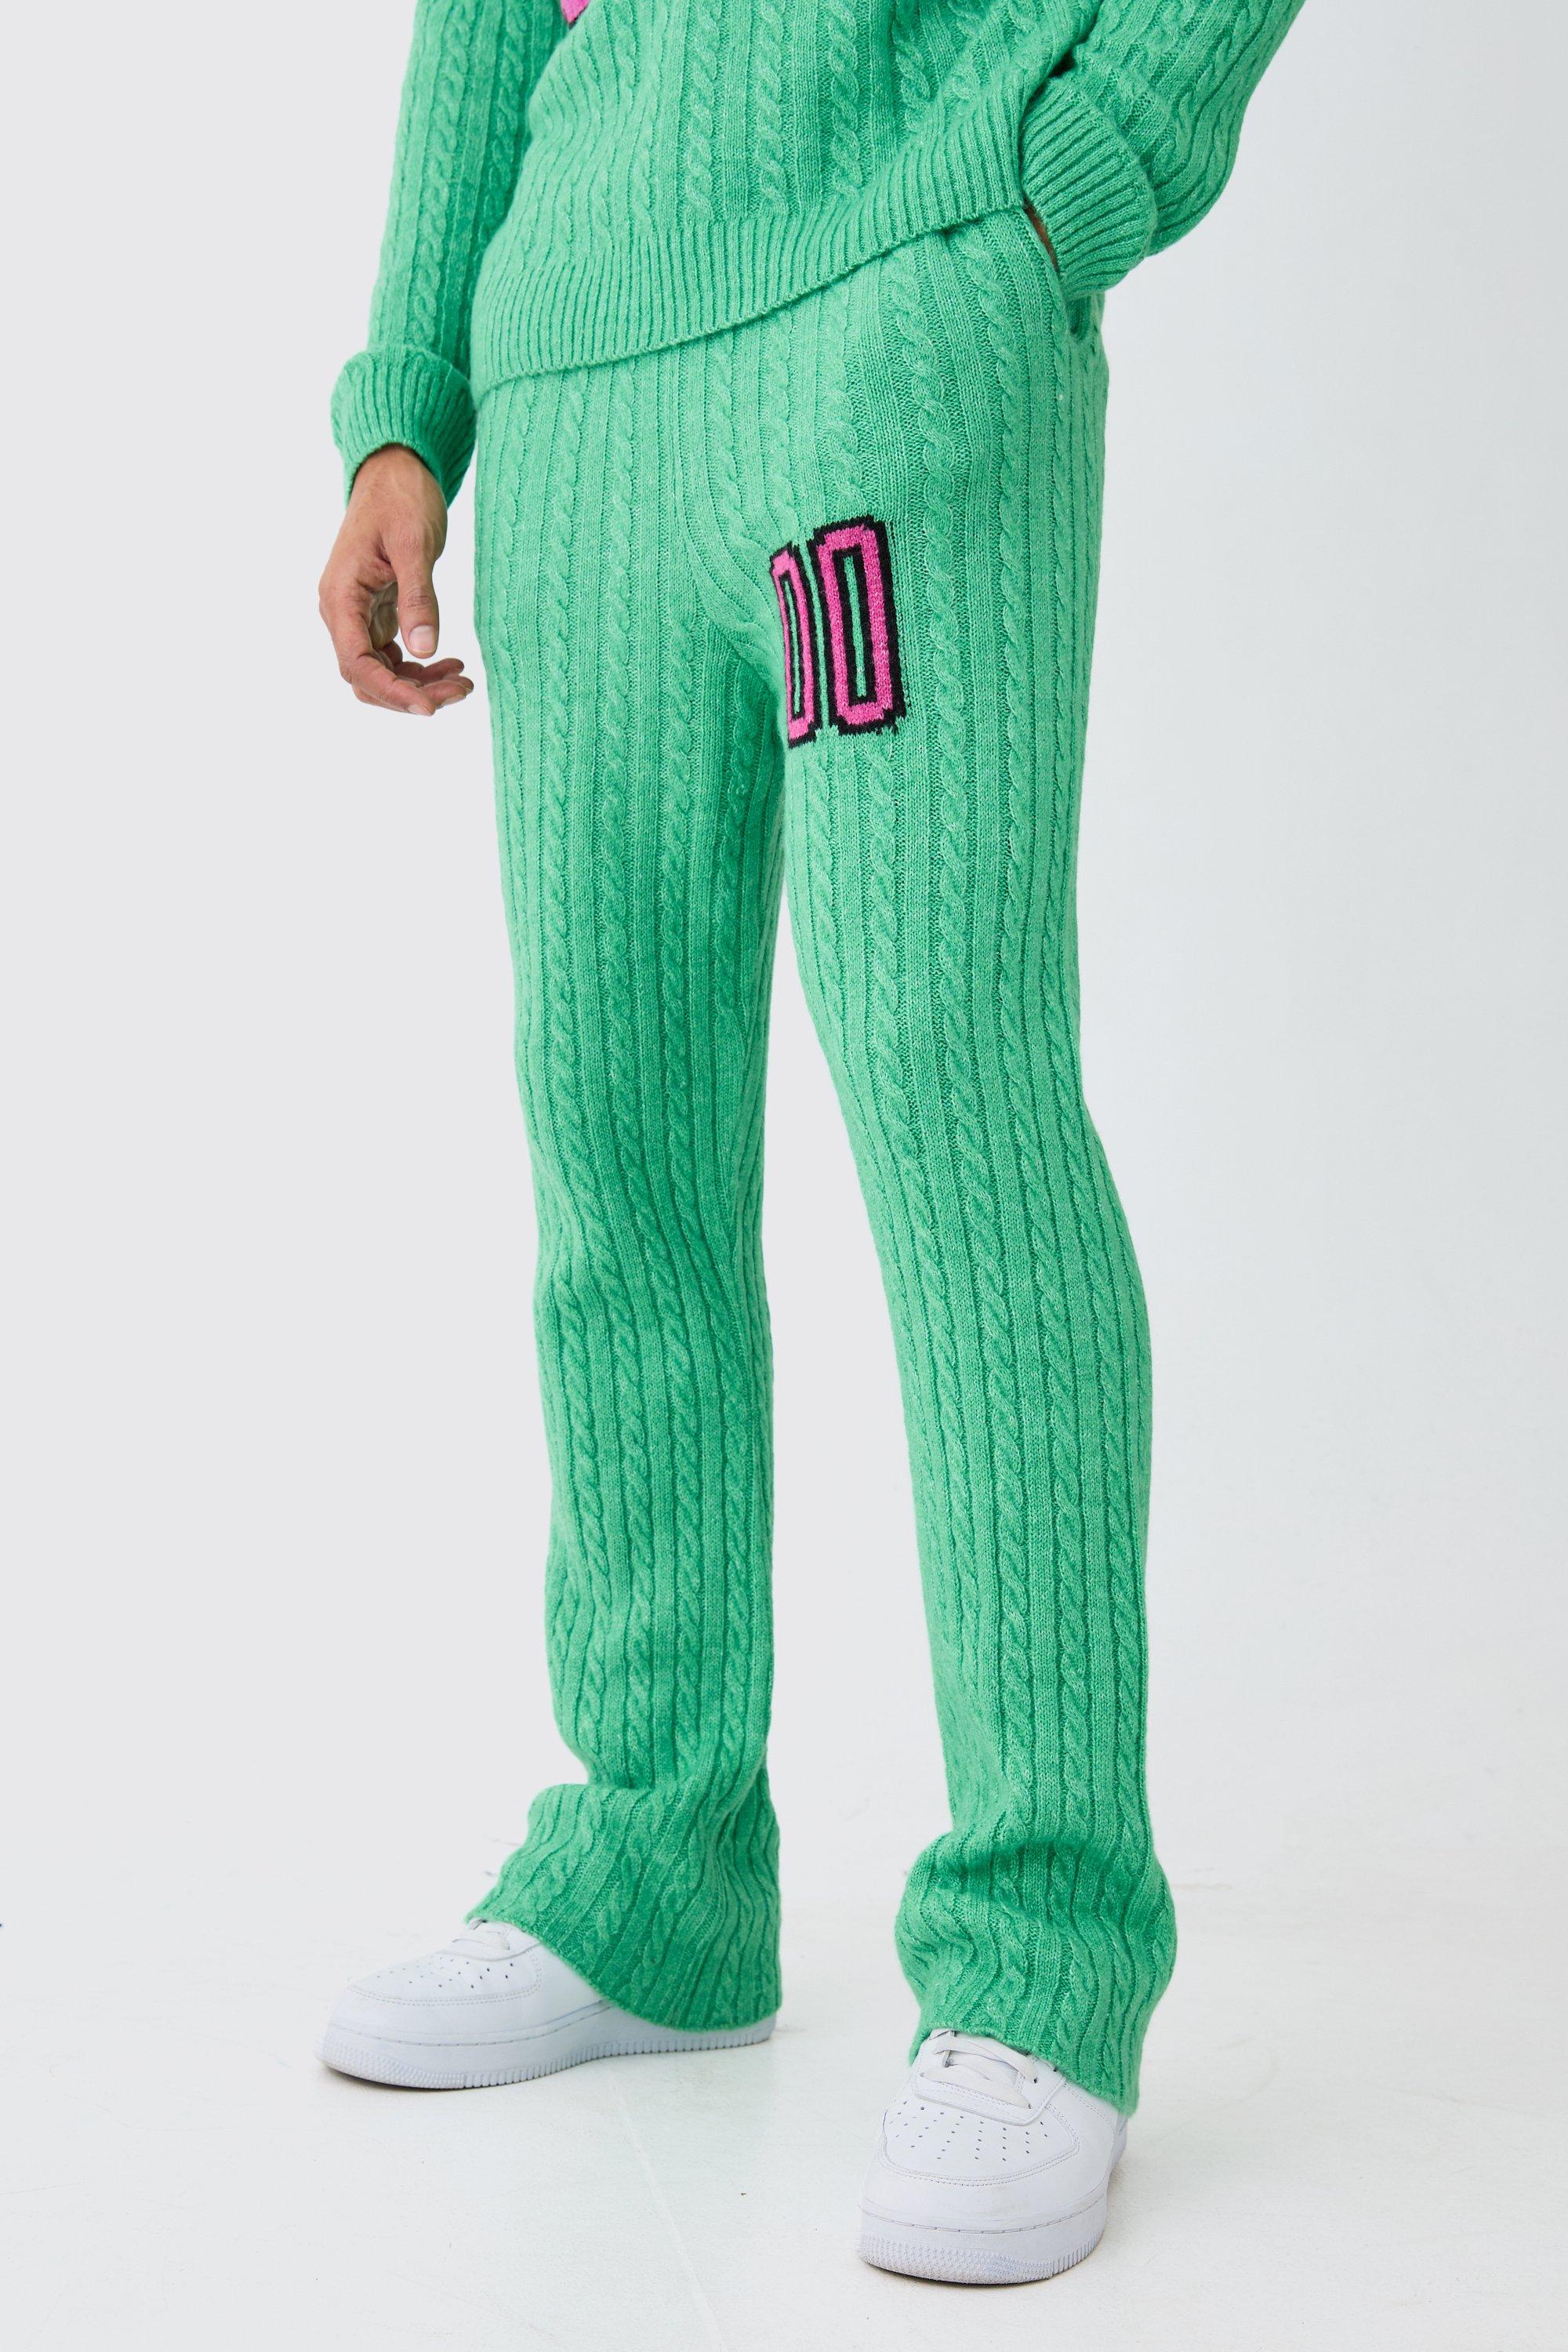 Image of Pantaloni tuta a zampa Slim Fit in maglia intrecciata spazzolata, Verde